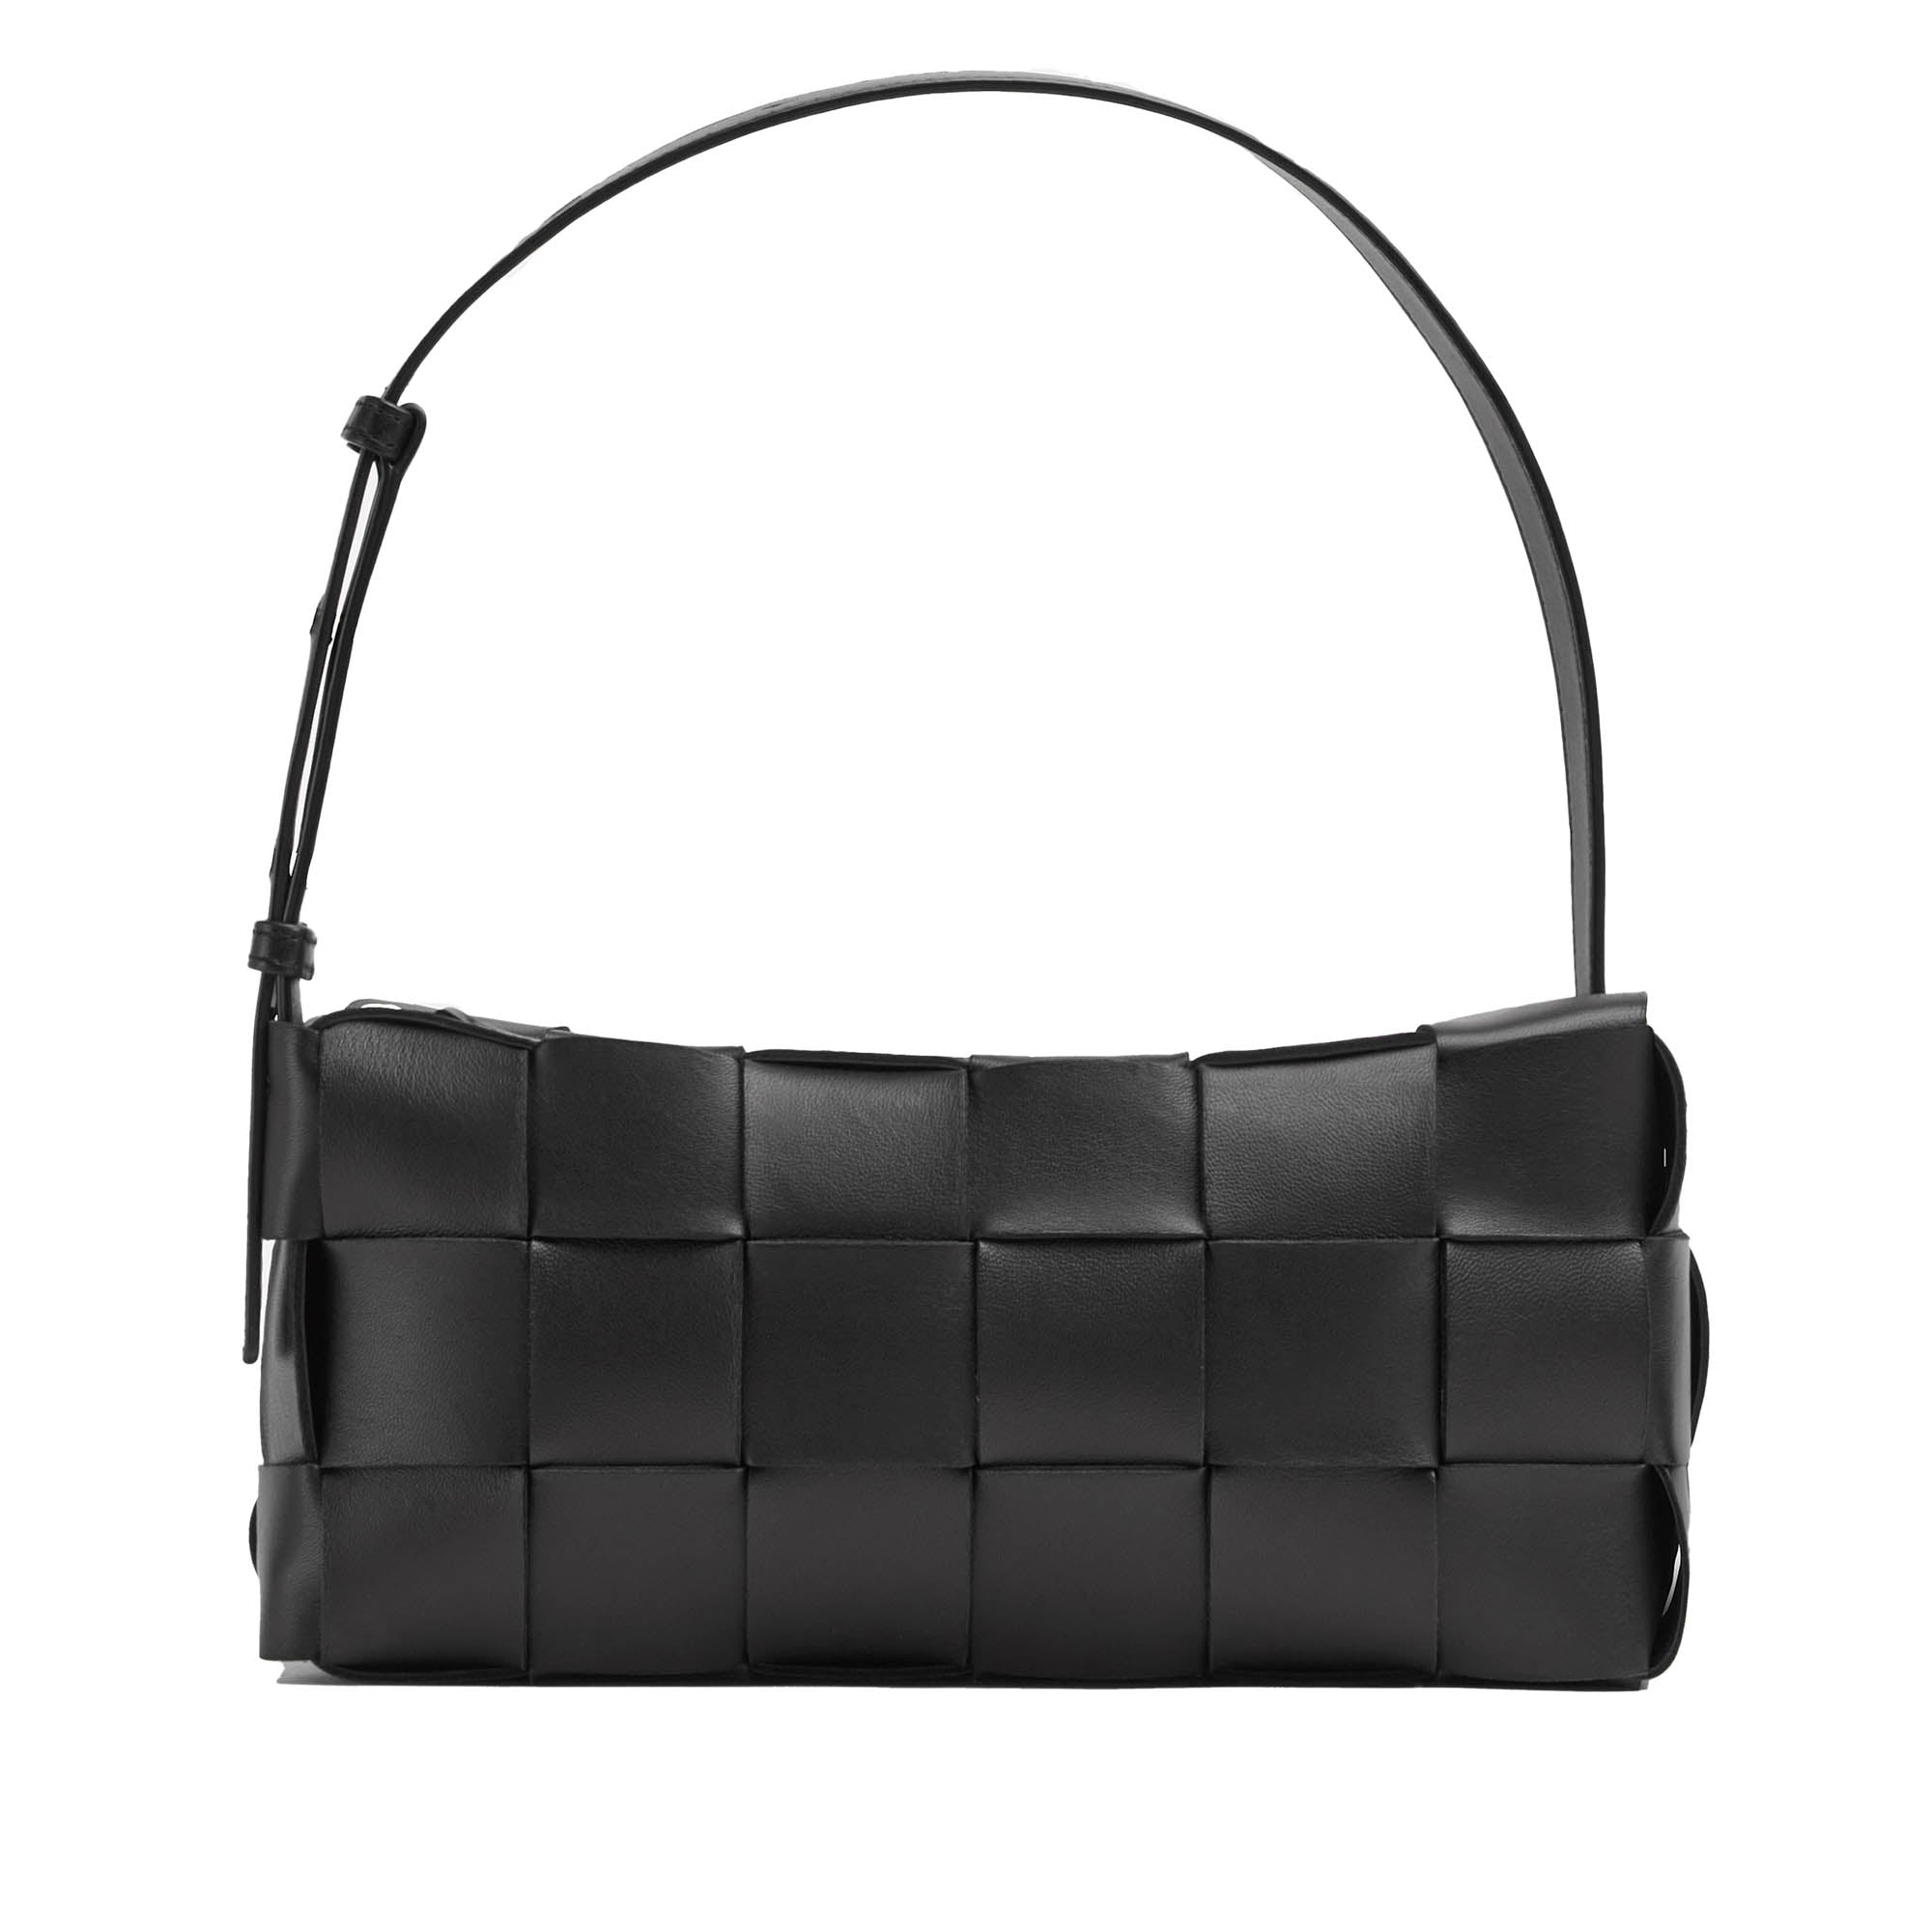 Bottega Veneta® Women's Mini Cassette Camera Bag in Black. Shop online now.